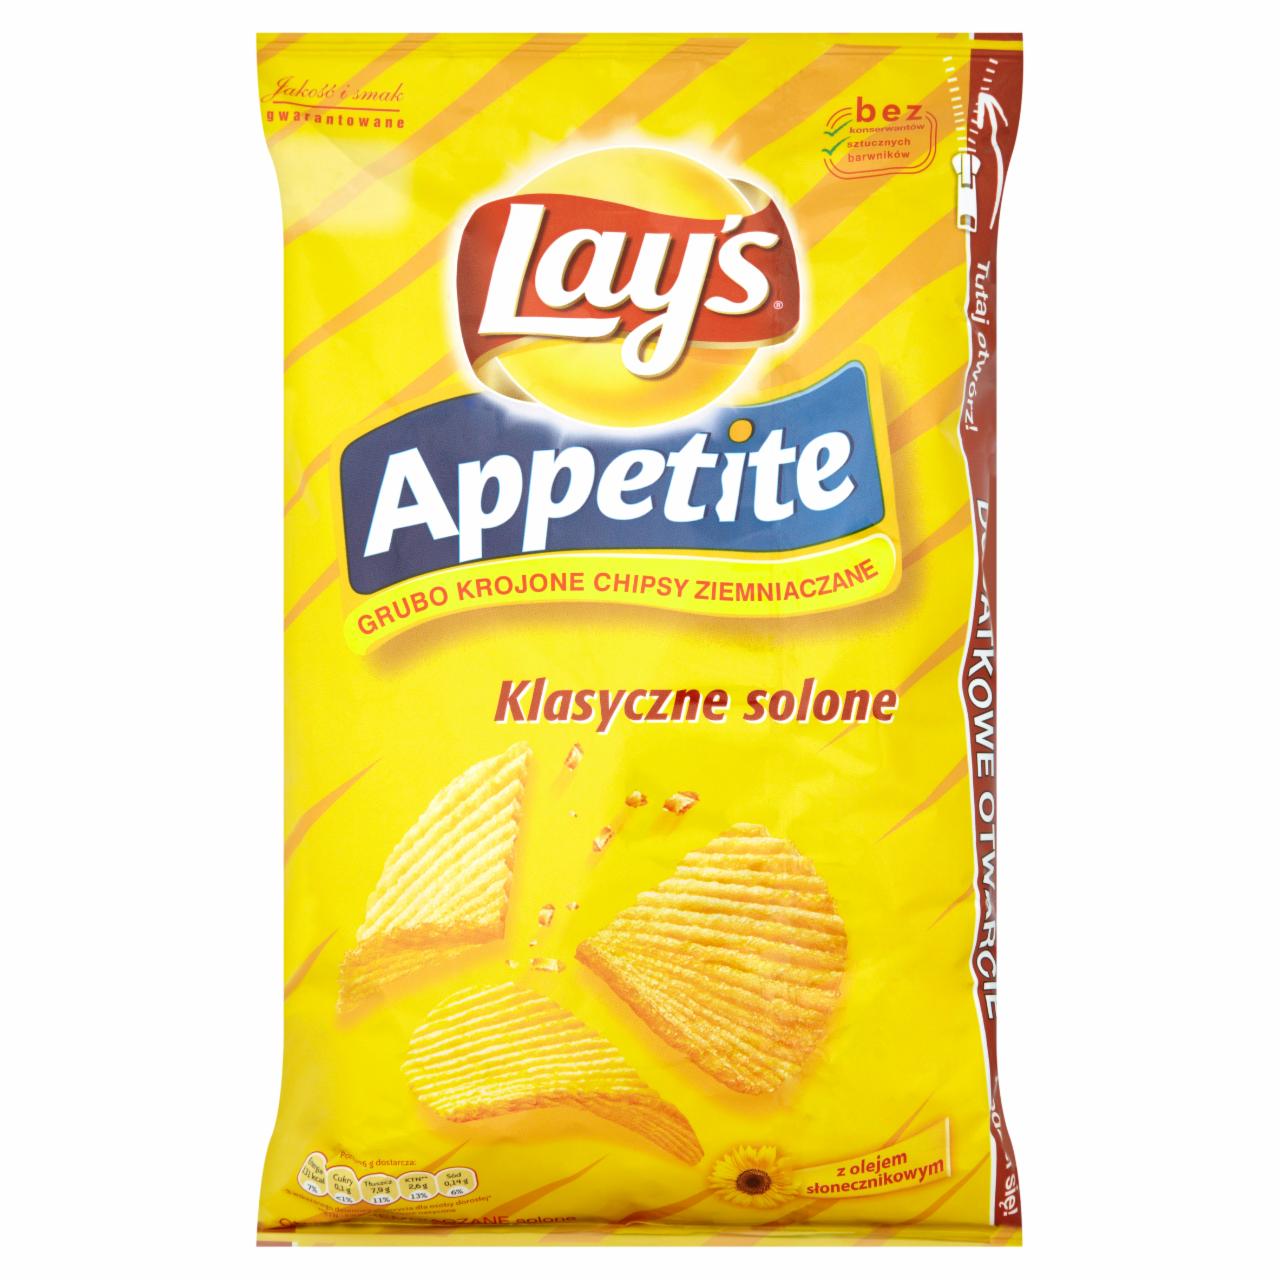 Zdjęcia - Lay's Appetite Klasyczne solone Grubo krojone chipsy ziemniaczane 150 g